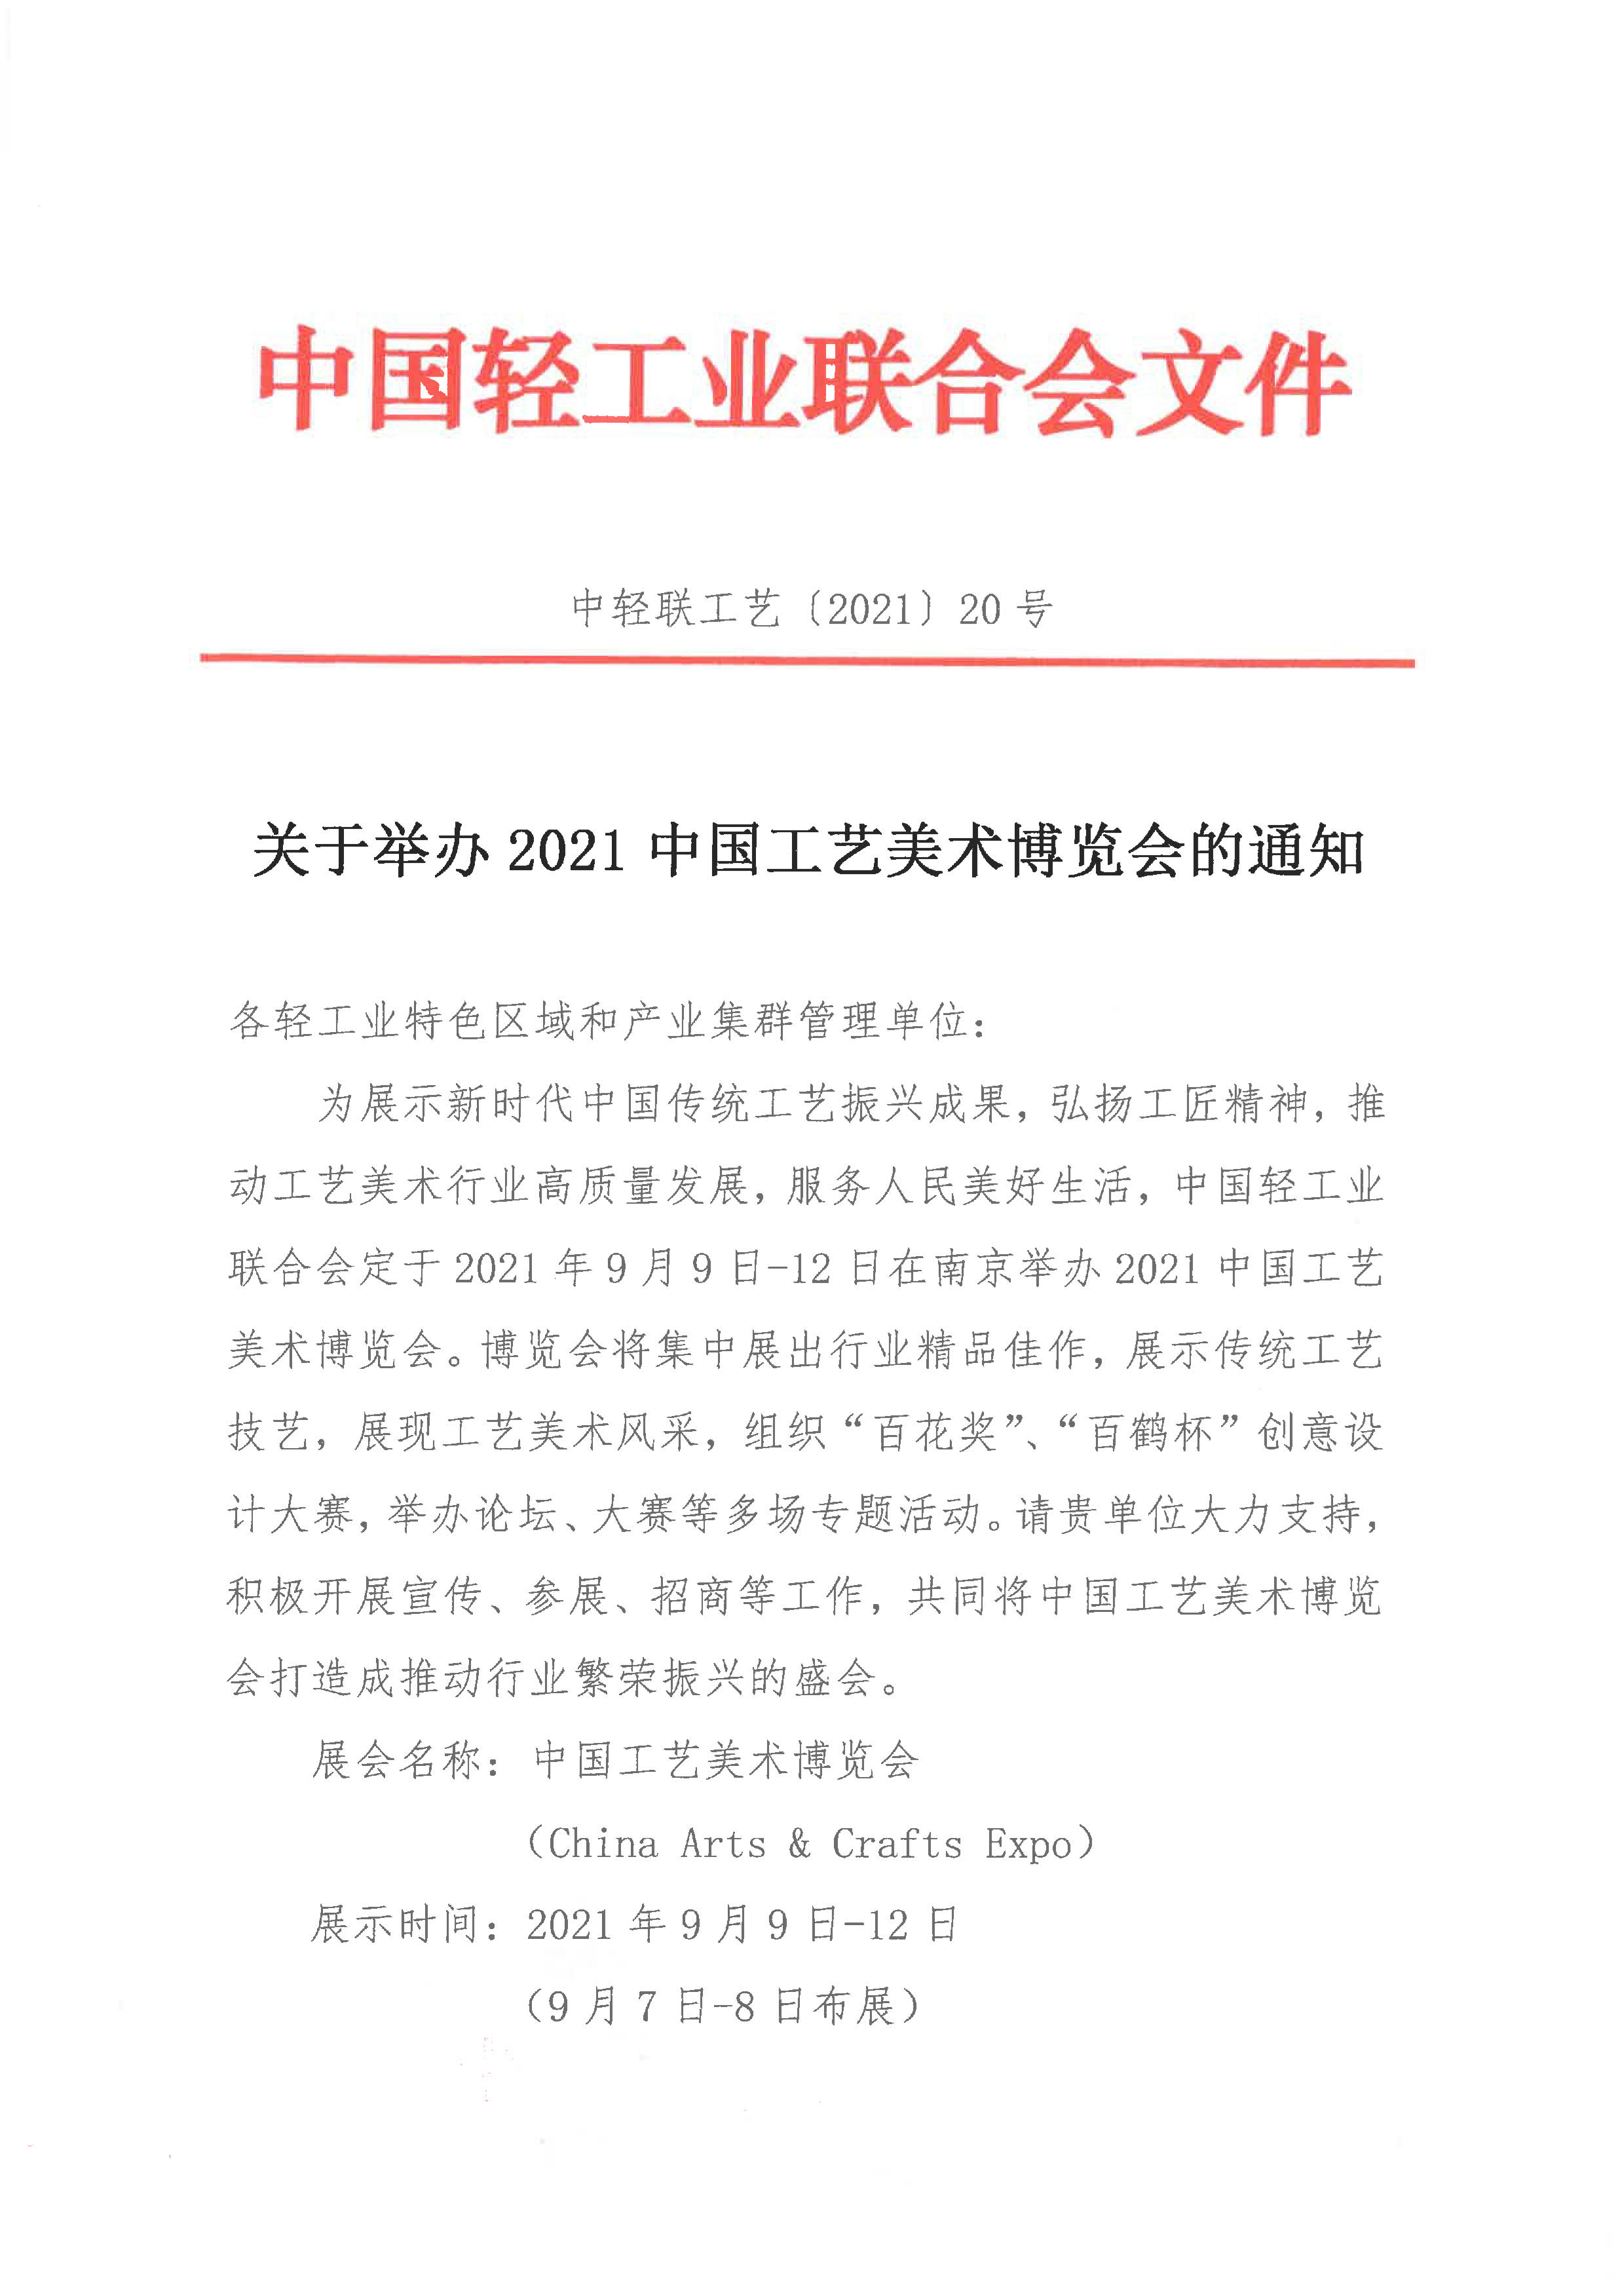 关于举办2021中国工艺美术博览会的通知（产业集群）_1.jpg